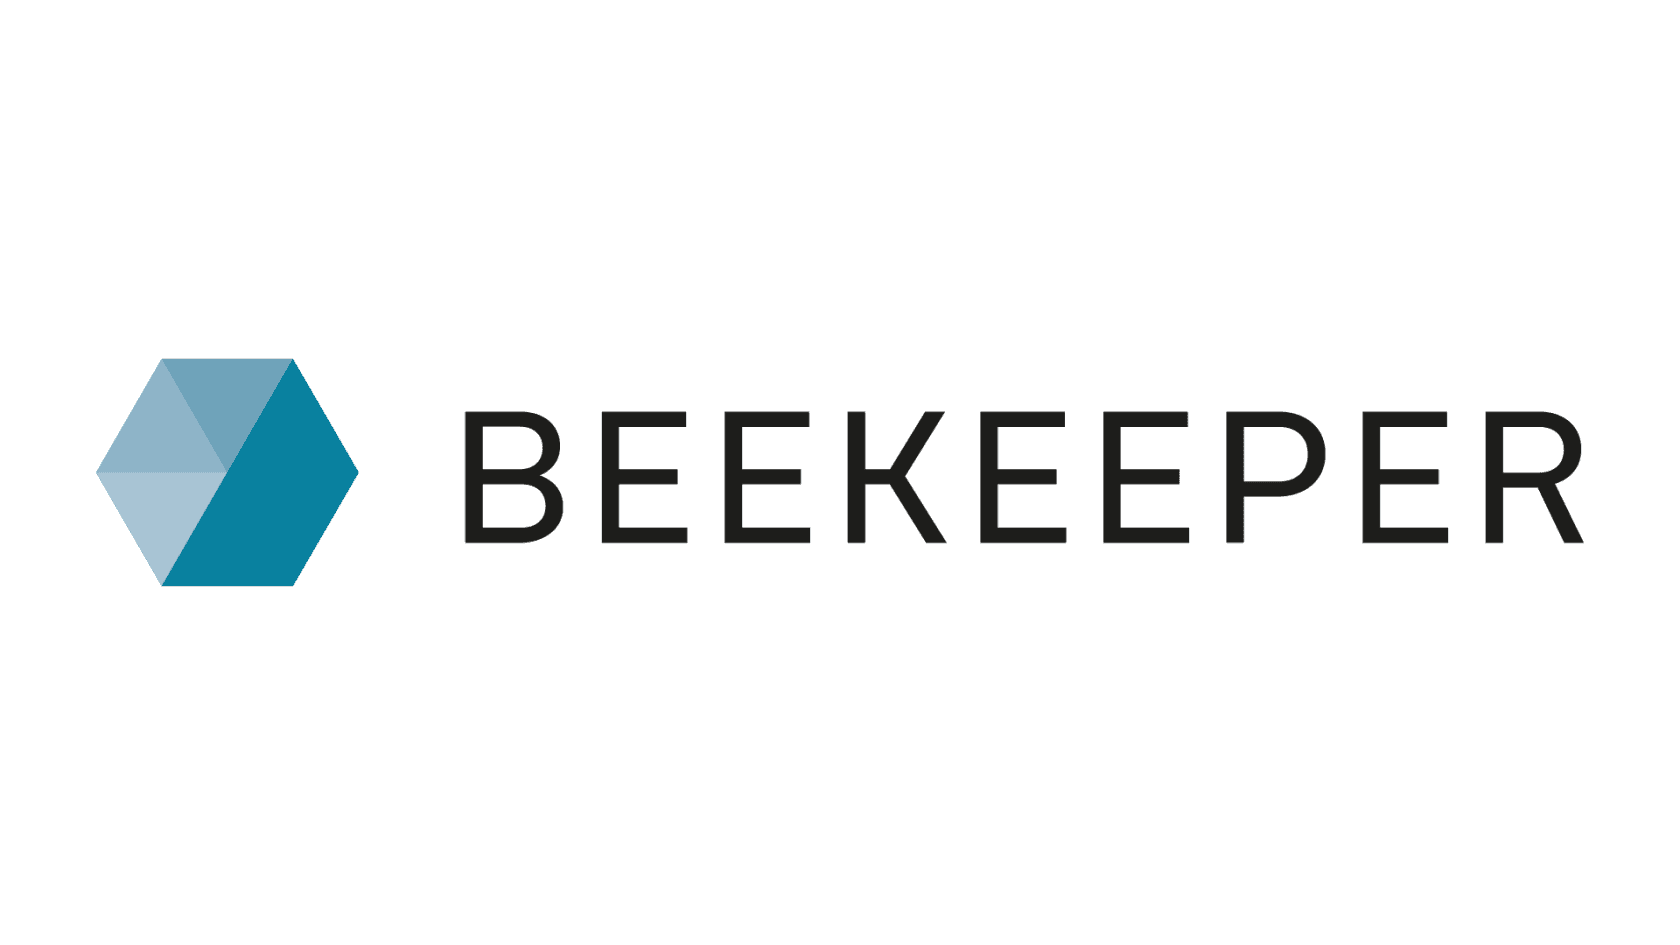 Beekeeper logo